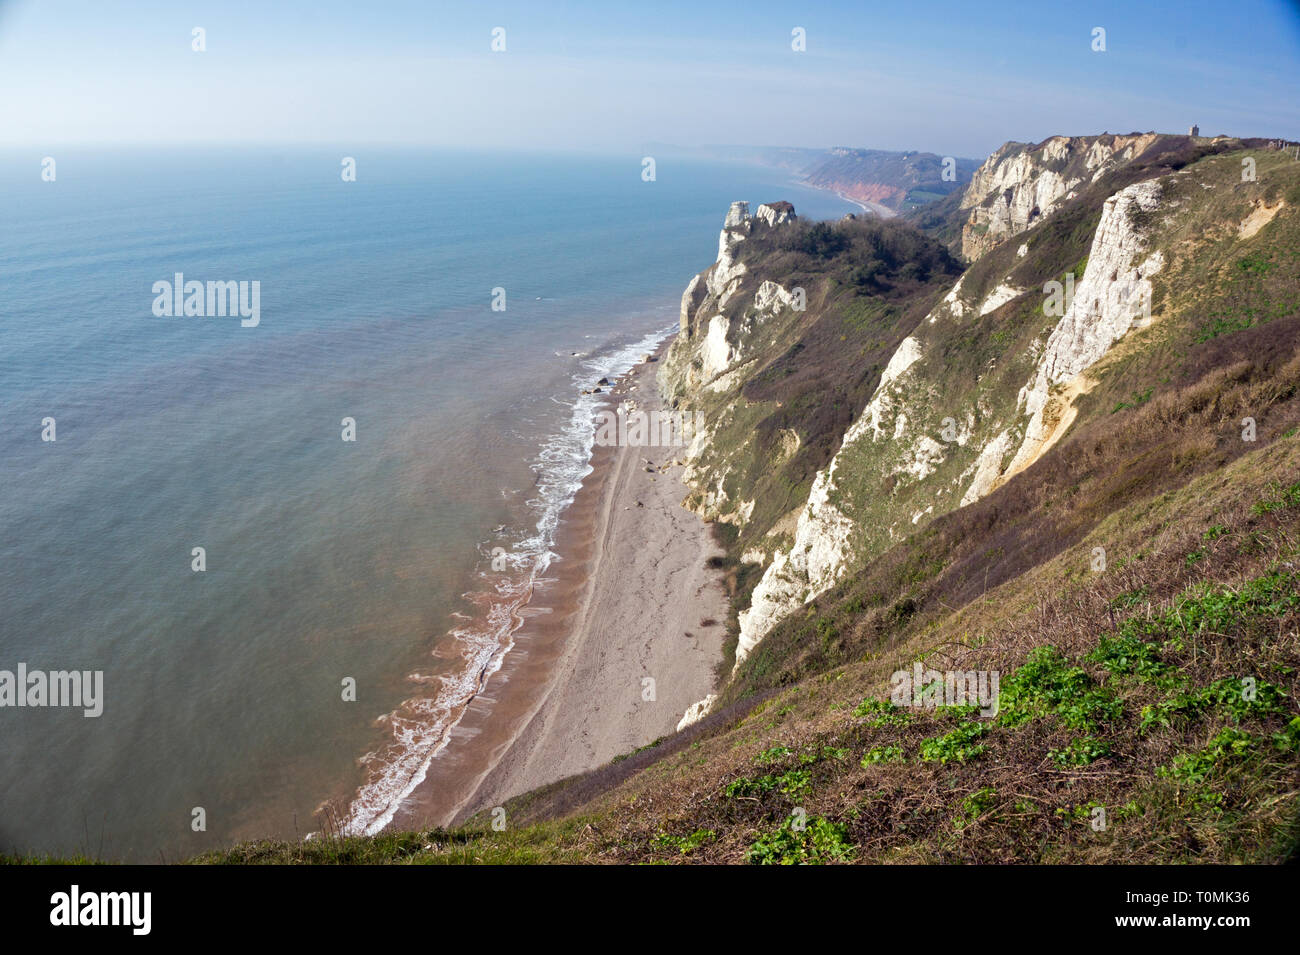 Vue panoramique sur les falaises de craie de la côte jurassique et la plage, la bière, la côte est du Devon, Angleterre Banque D'Images